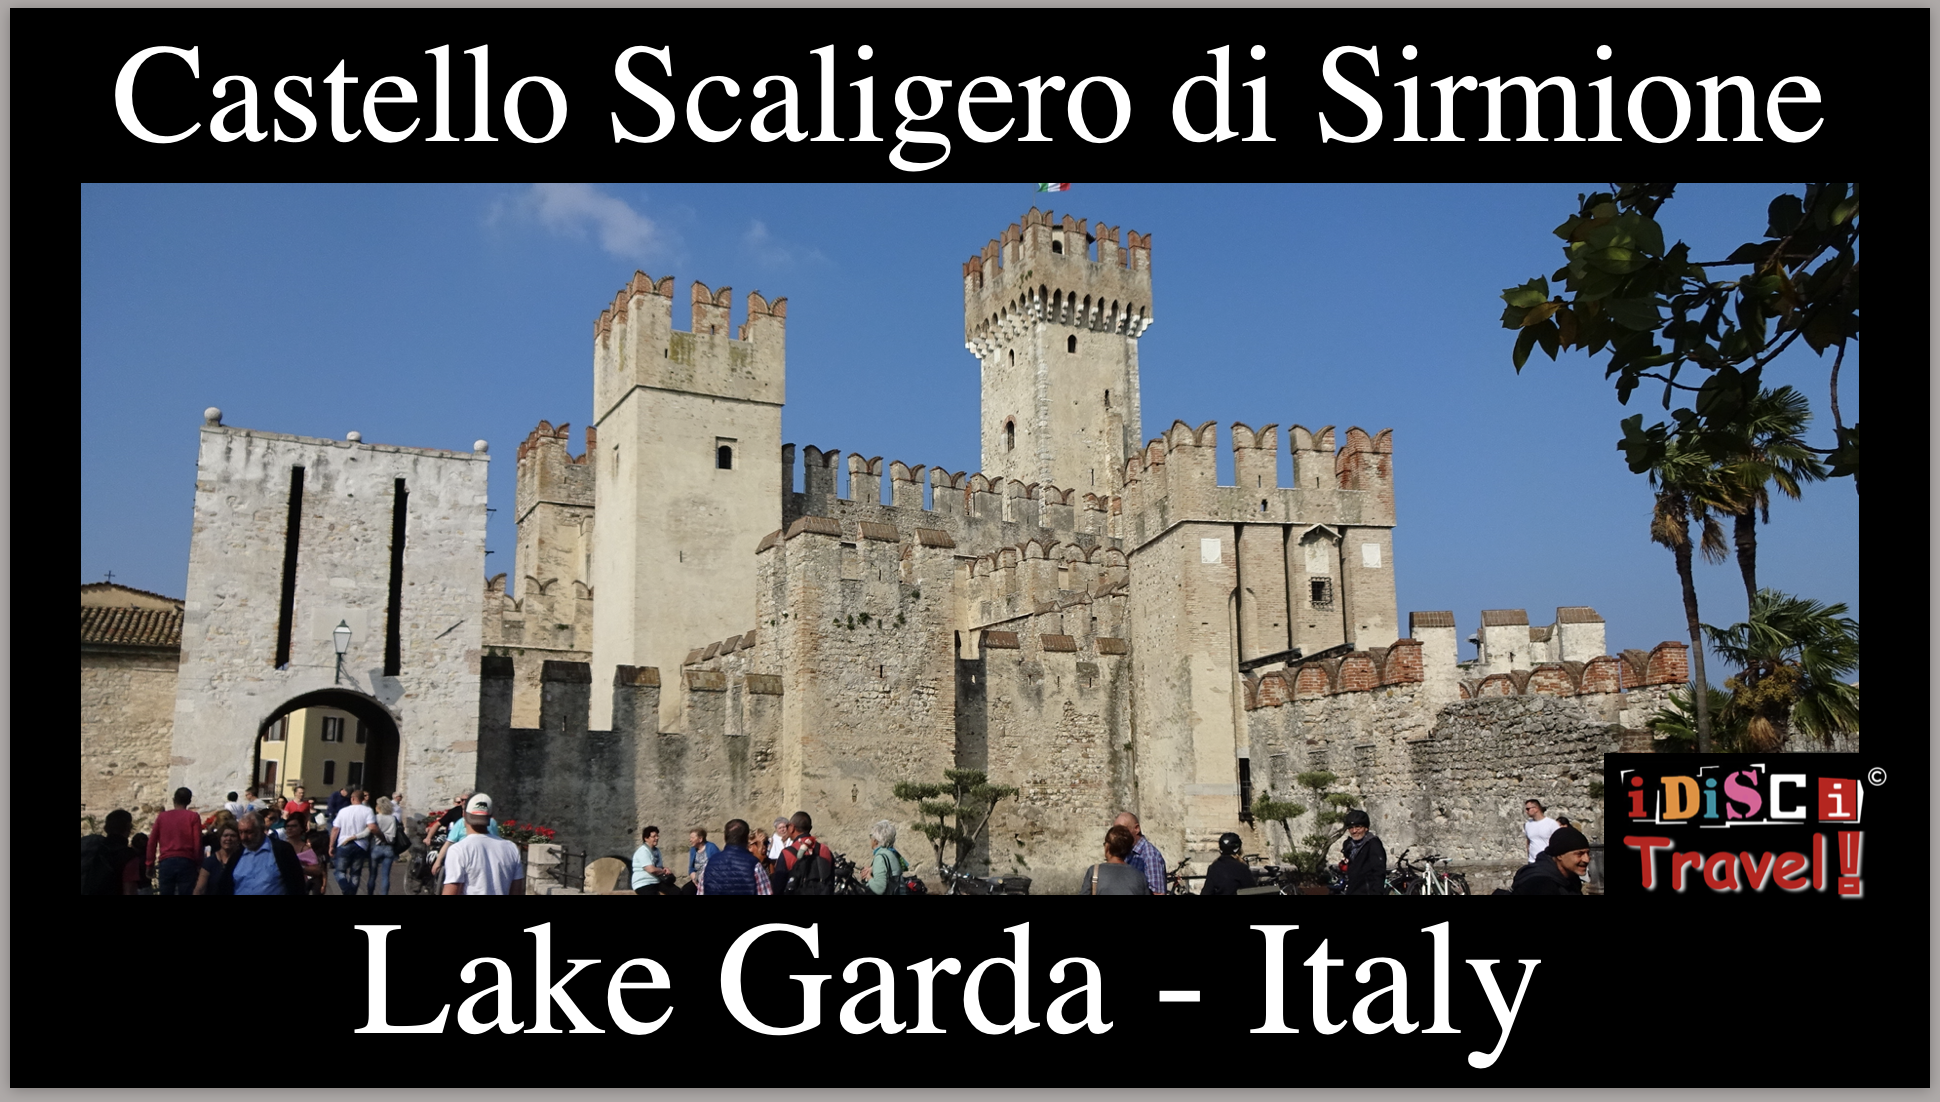 ITALY - Sirmione - Castello Scaligero di Sirmione, Lake Garda (Lago di Garda)